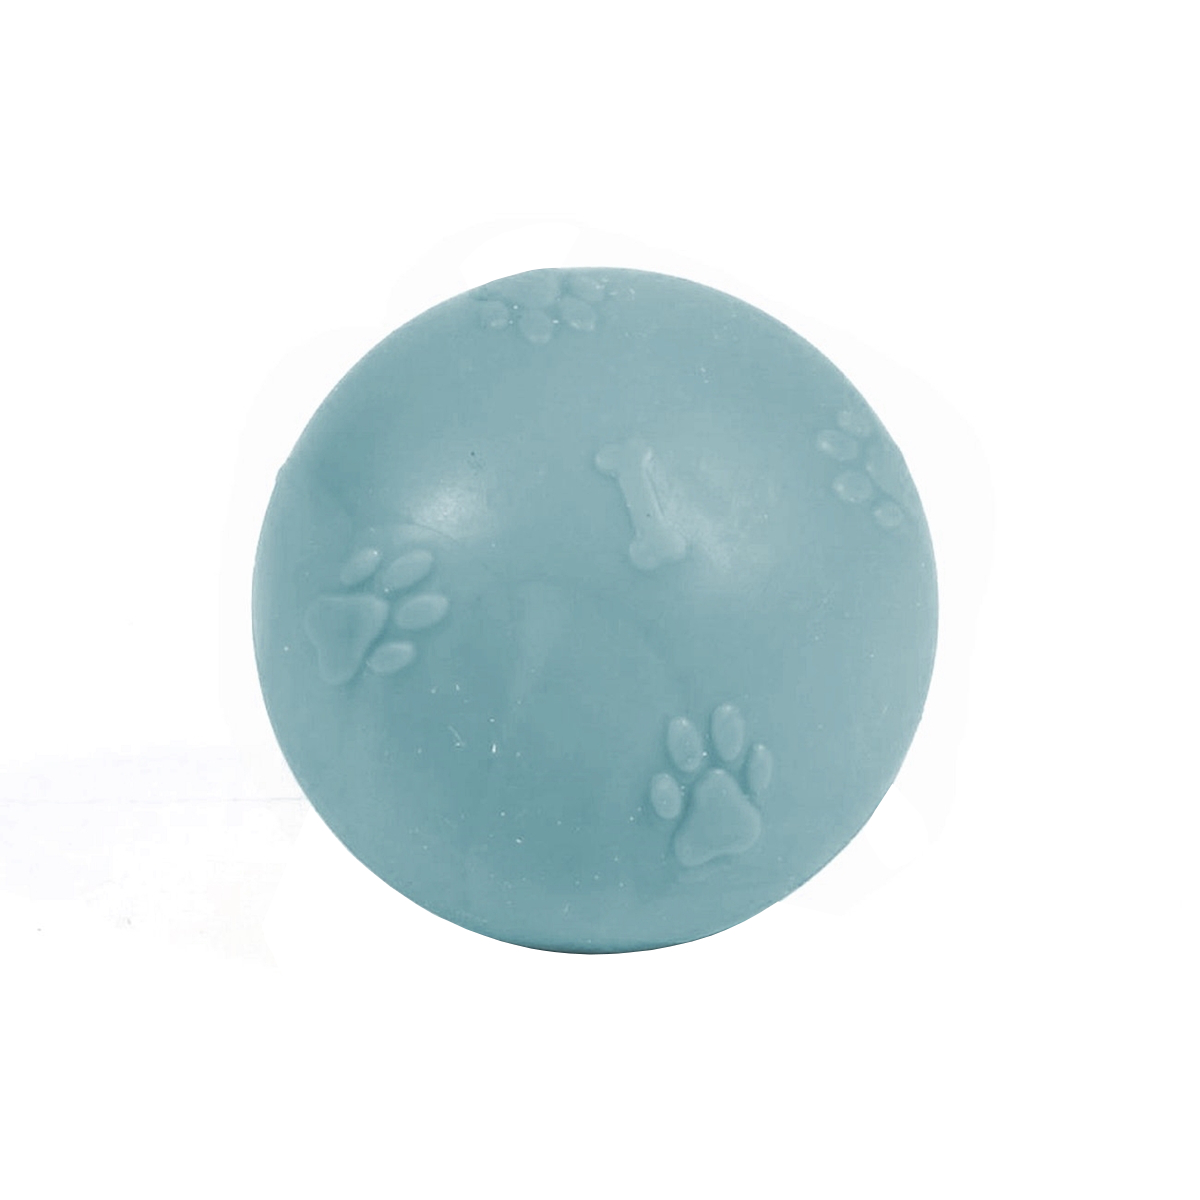 CLZ205 Pati Desenli Sert Köpek Oyun Topu 7 cm Medium Açık Mavi